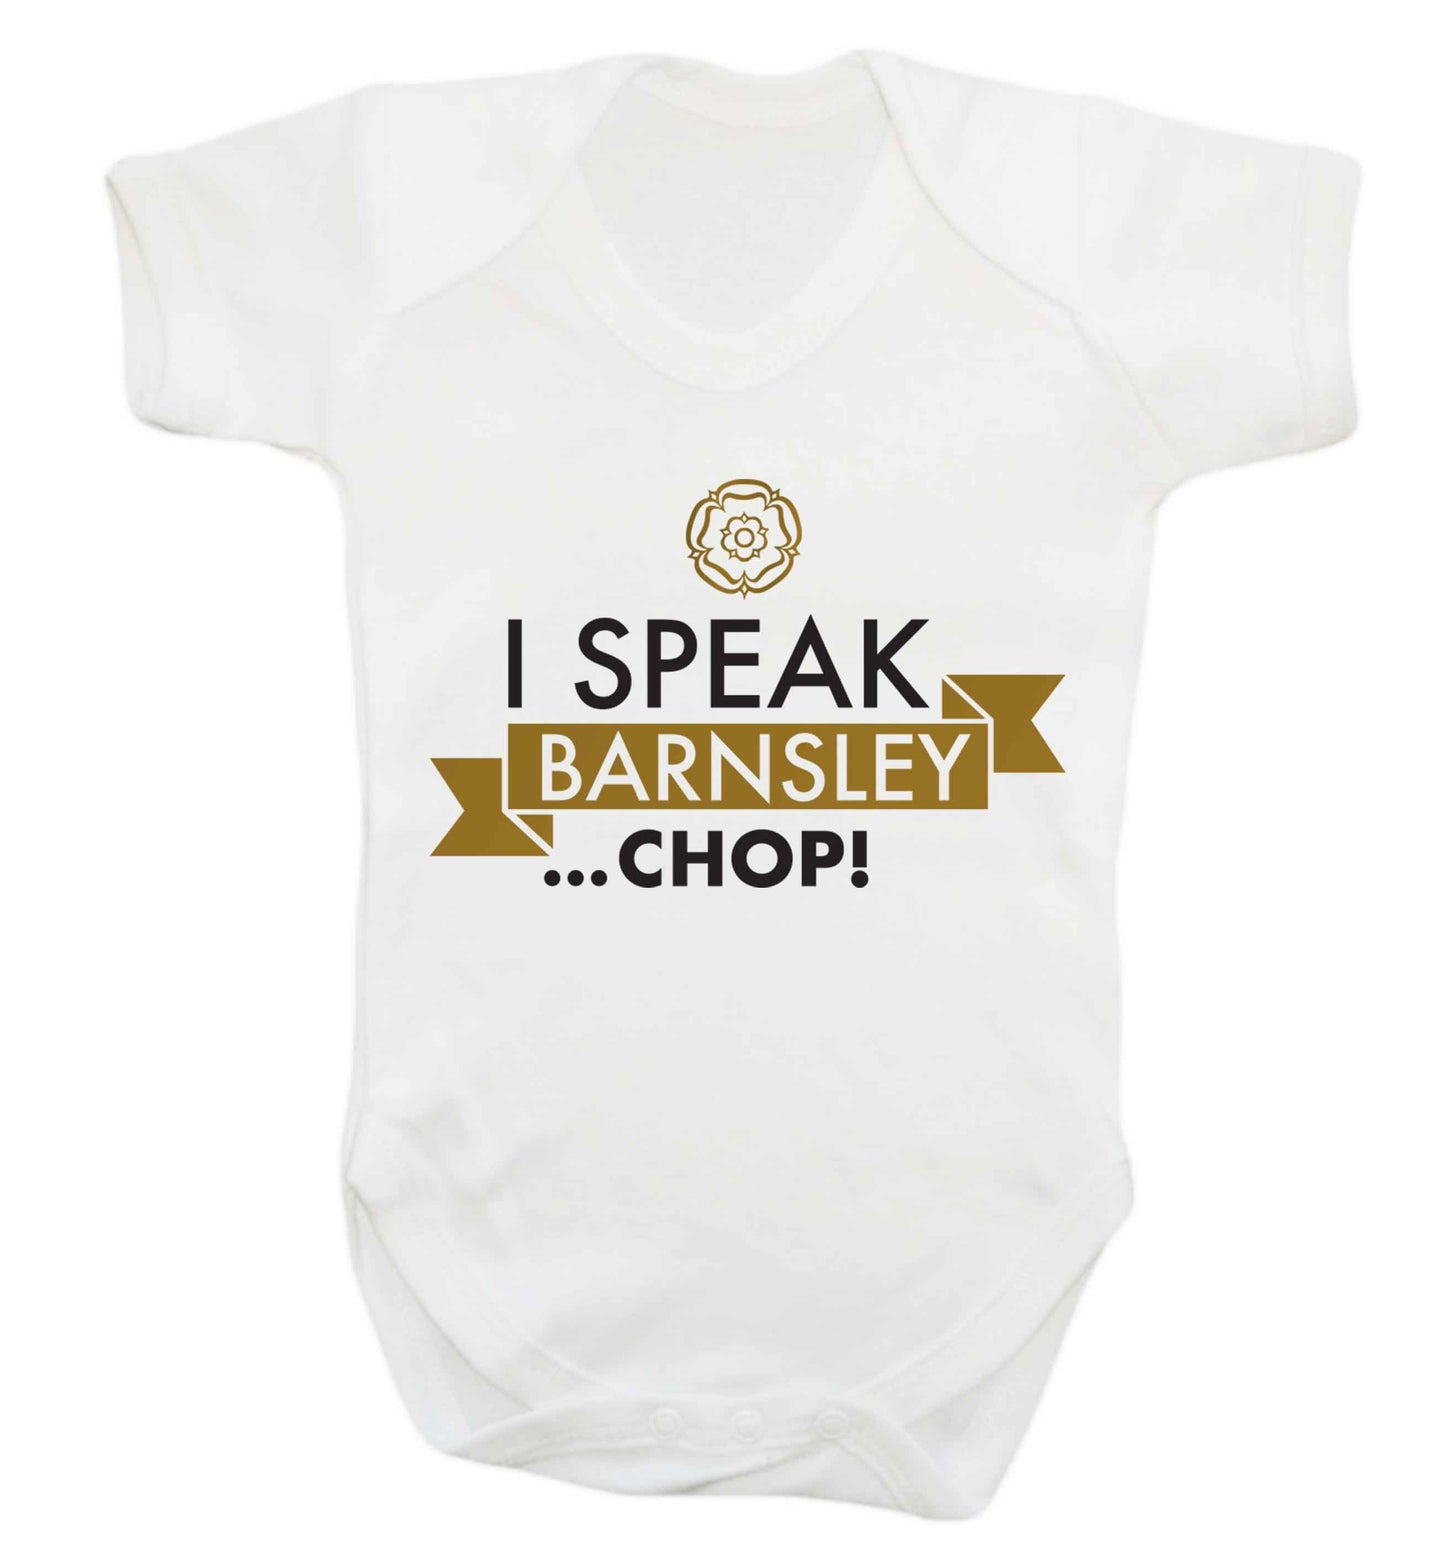 I speak Barnsley...chop! Baby Vest white 18-24 months